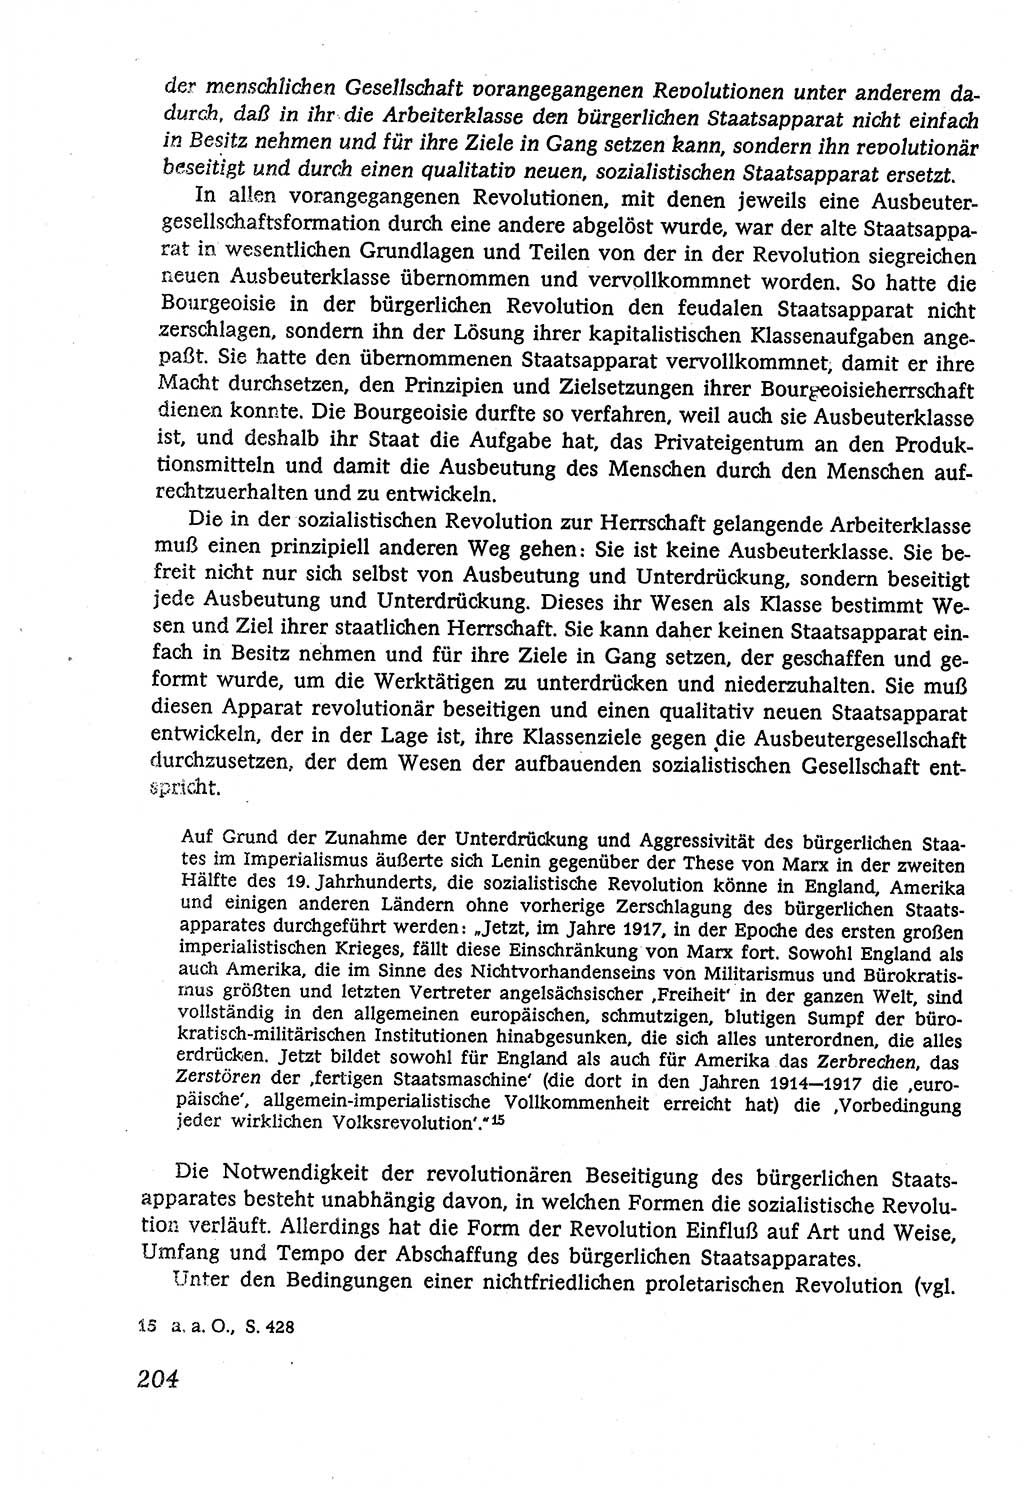 Marxistisch-leninistische (ML) Staats- und Rechtstheorie [Deutsche Demokratische Republik (DDR)], Lehrbuch 1980, Seite 204 (ML St.-R.-Th. DDR Lb. 1980, S. 204)